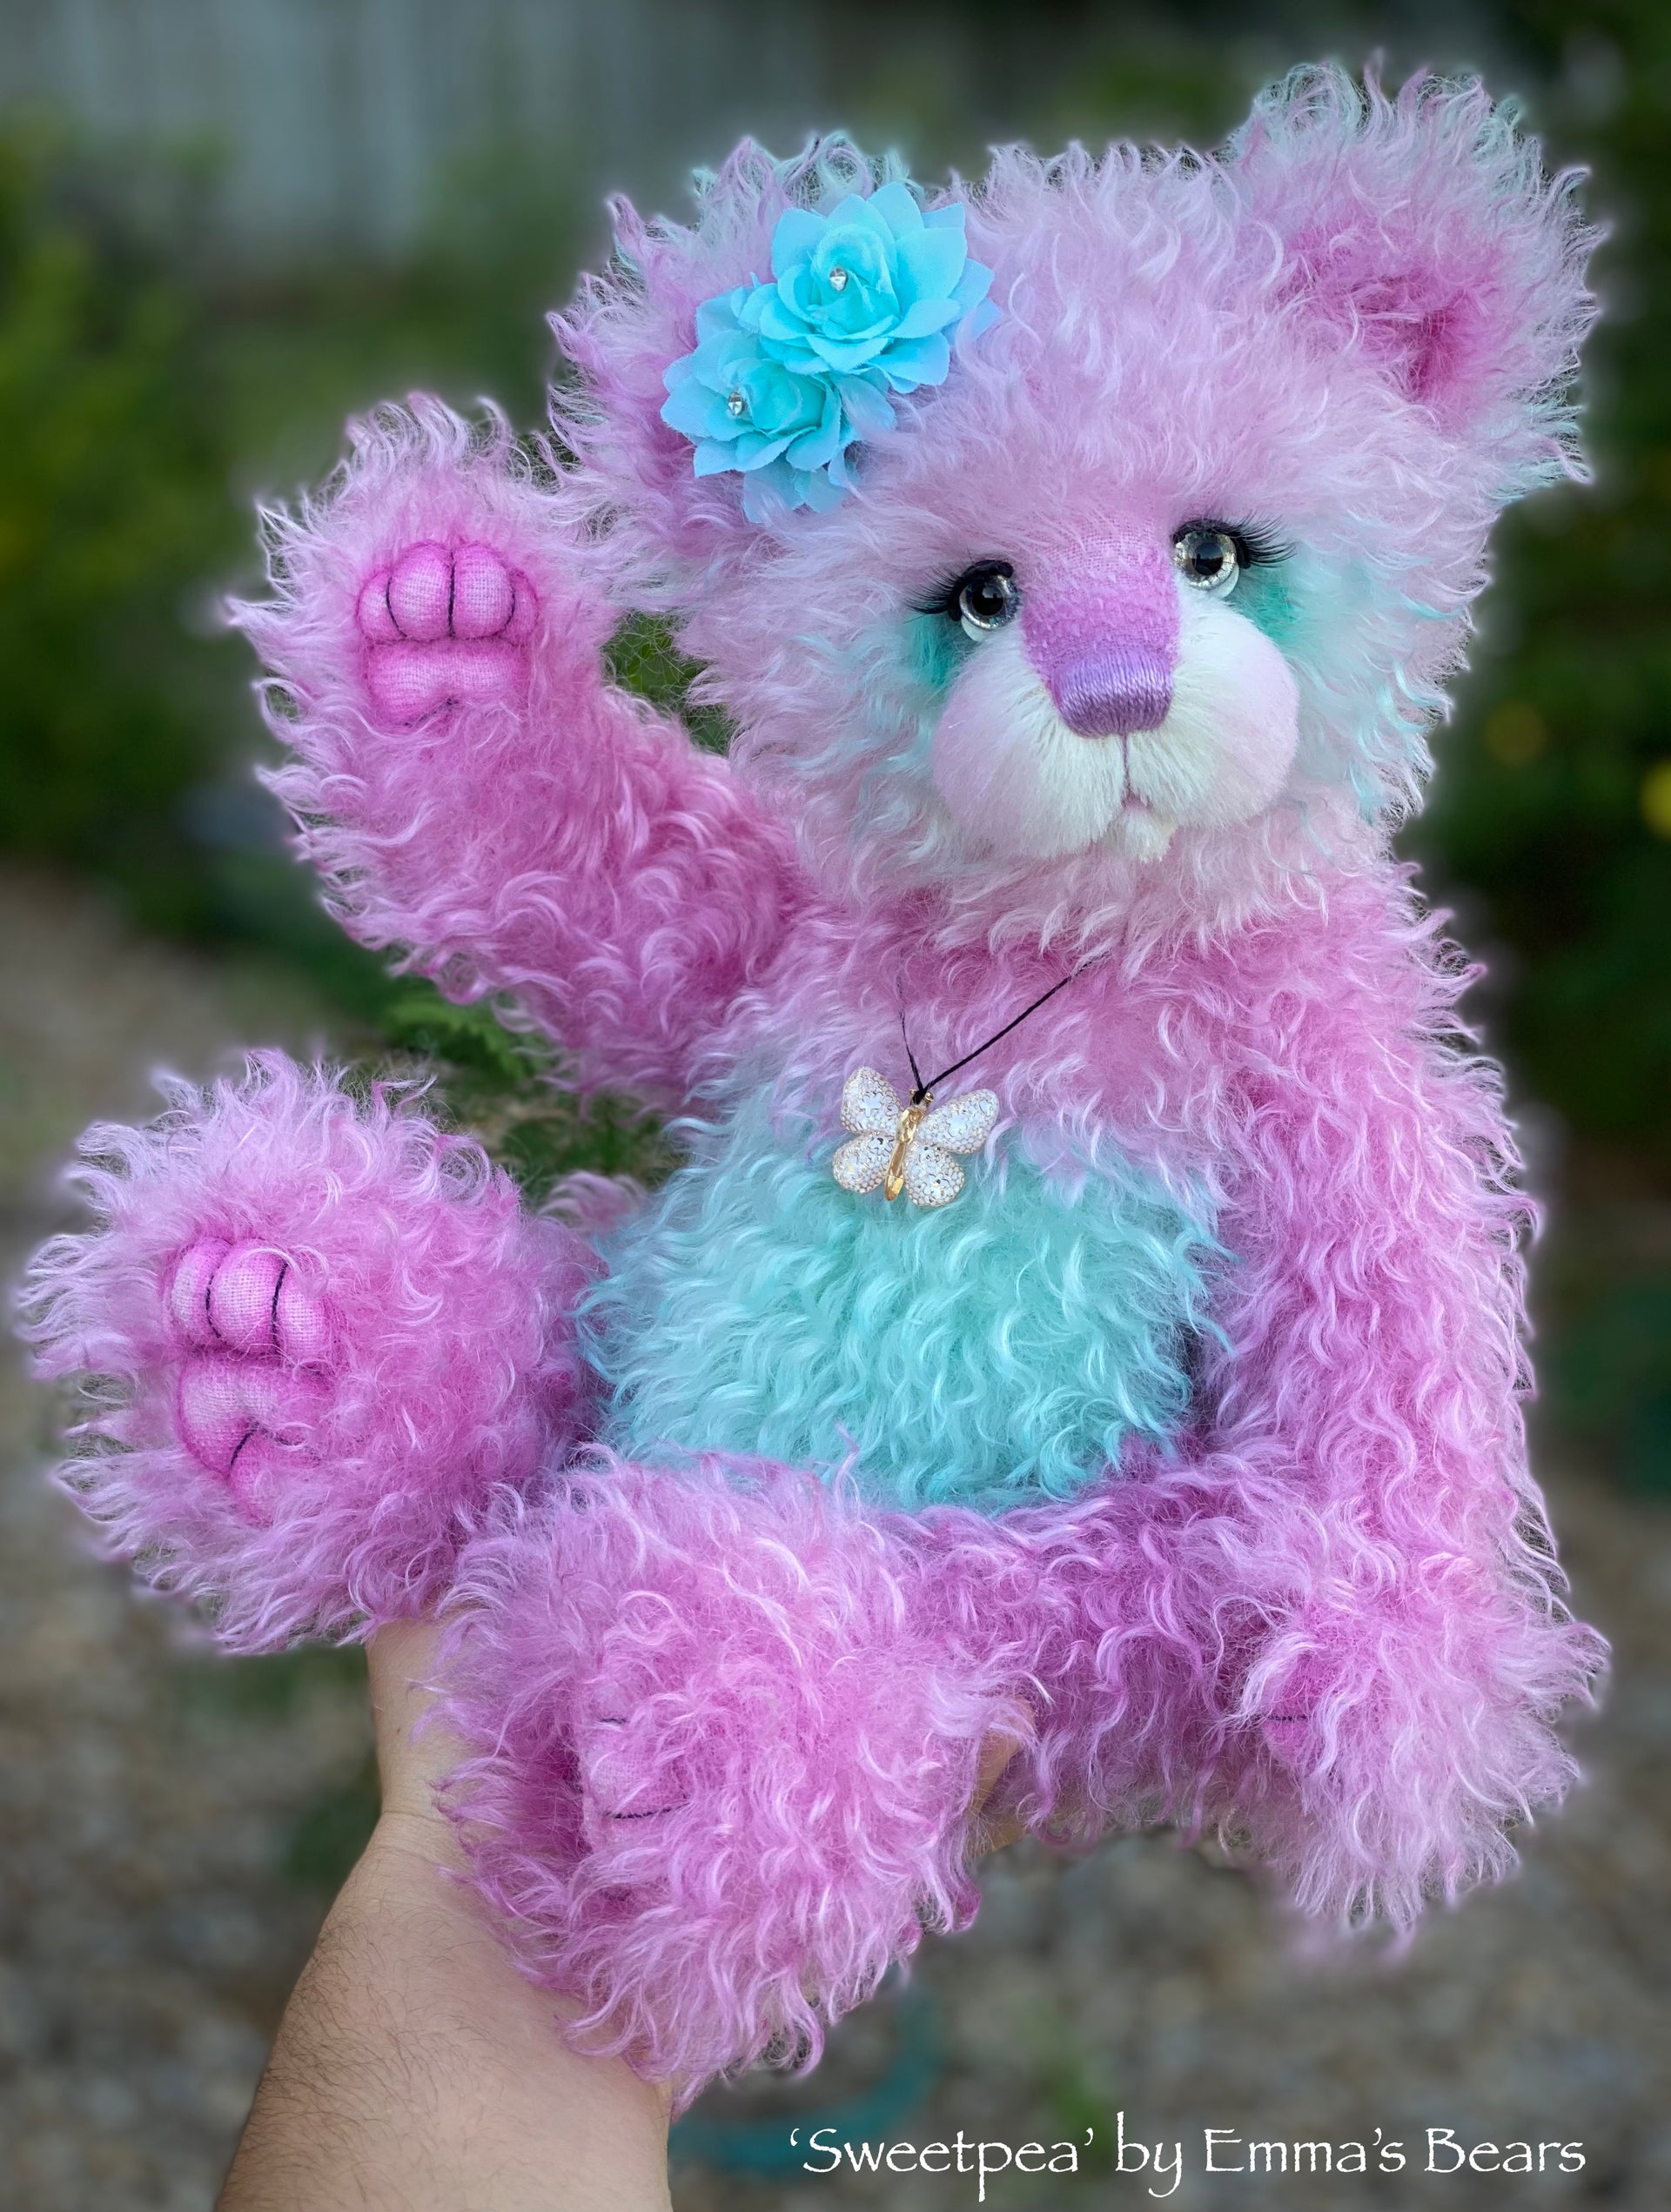 Sweetpea - 16" Hand-dyed Curlylocks Mohair Artist Bear by Emma's Bears - OOAK